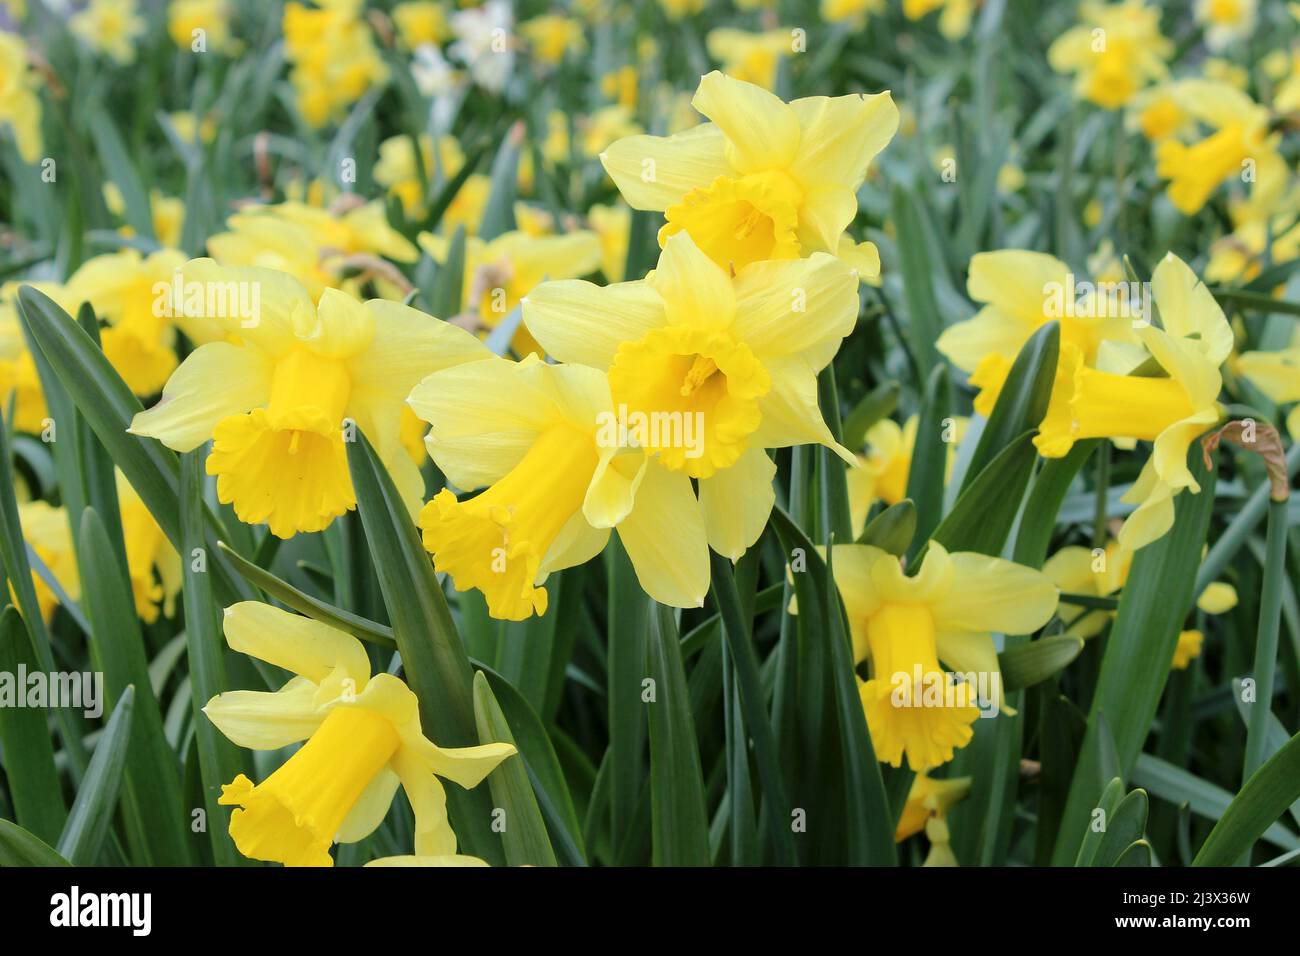 Daffodils at Silverdale, Lancashire, UK Stock Photo